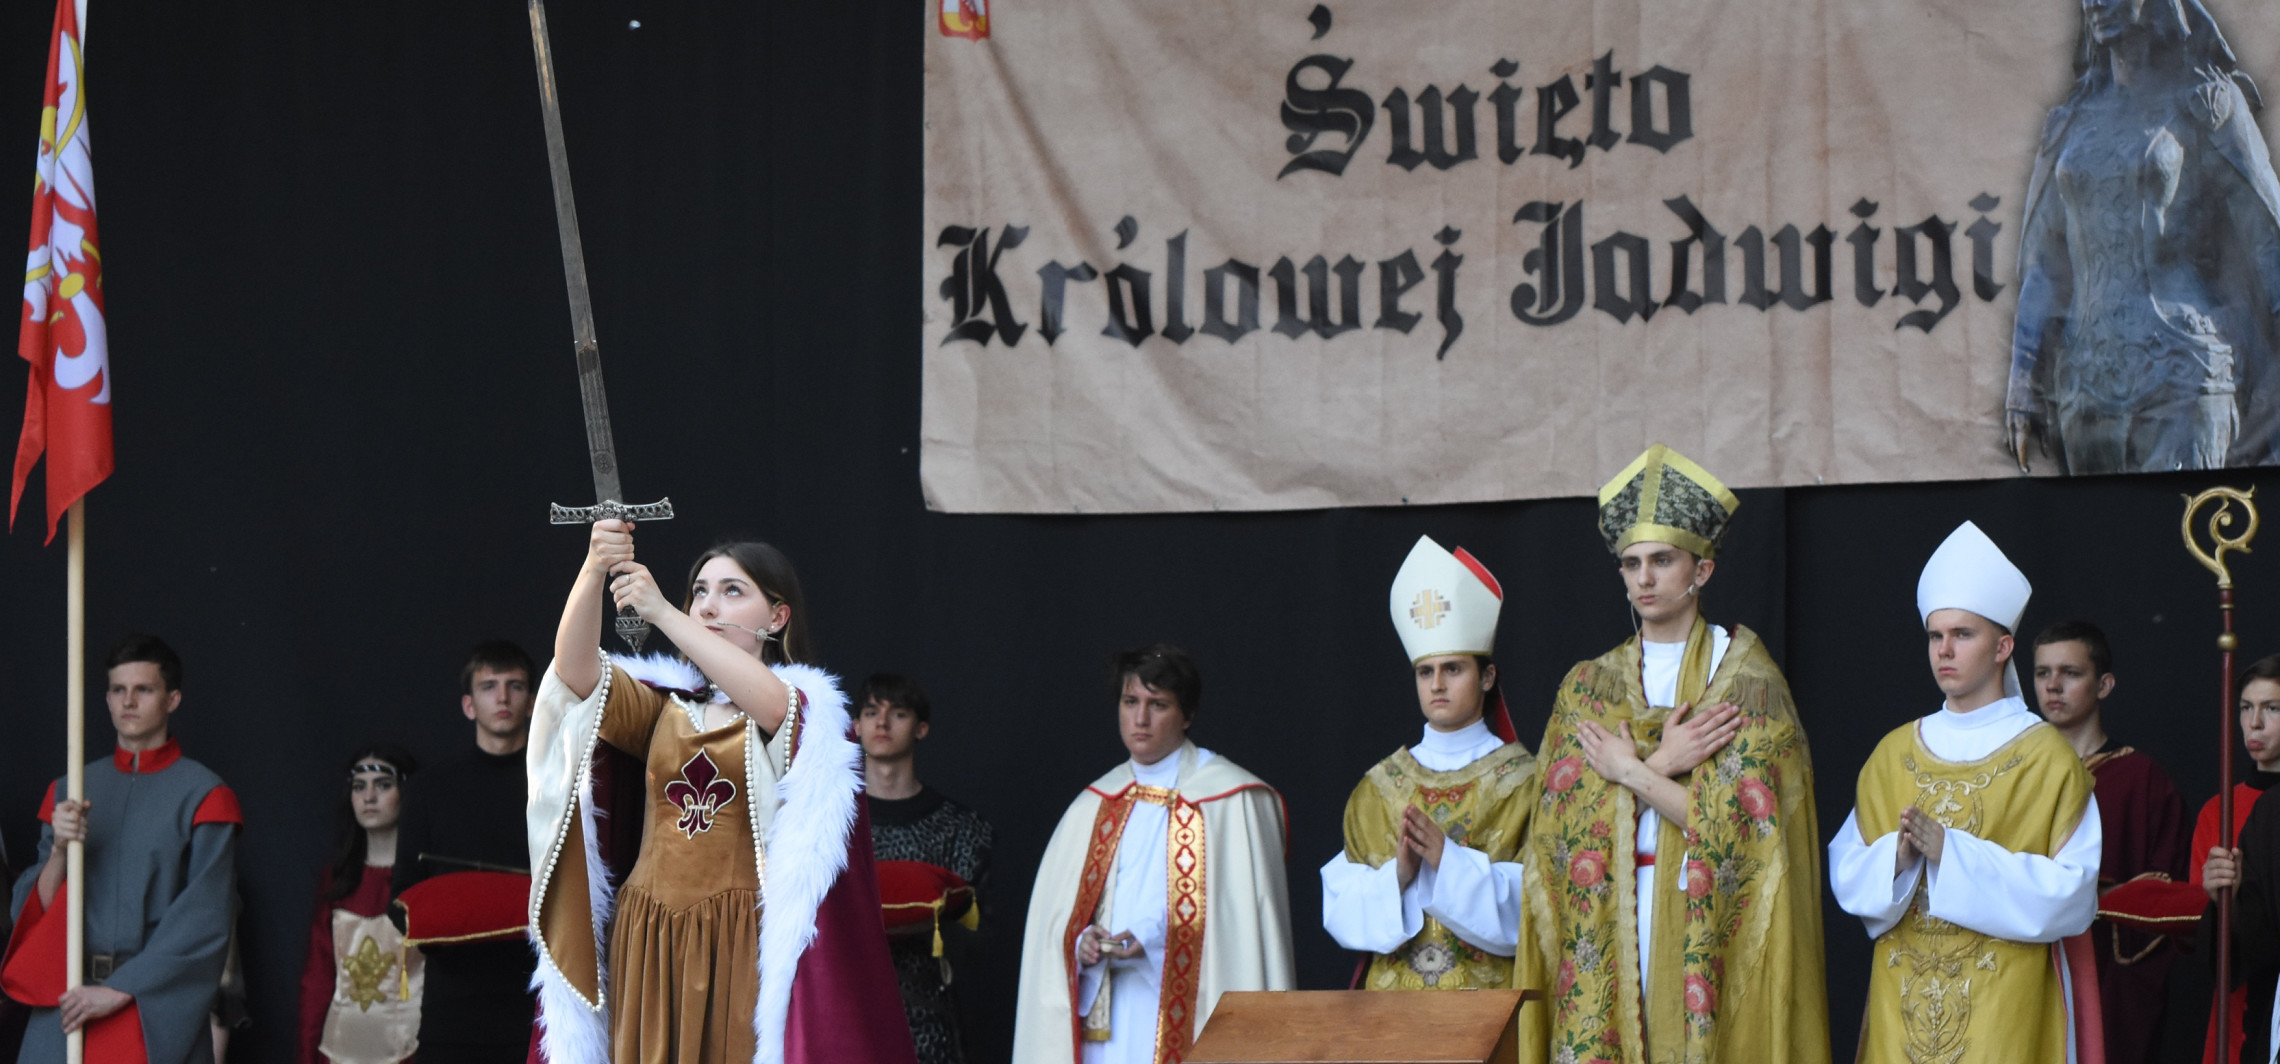 Inowrocław - W Solankach koronowano dziś patronkę Inowrocławia